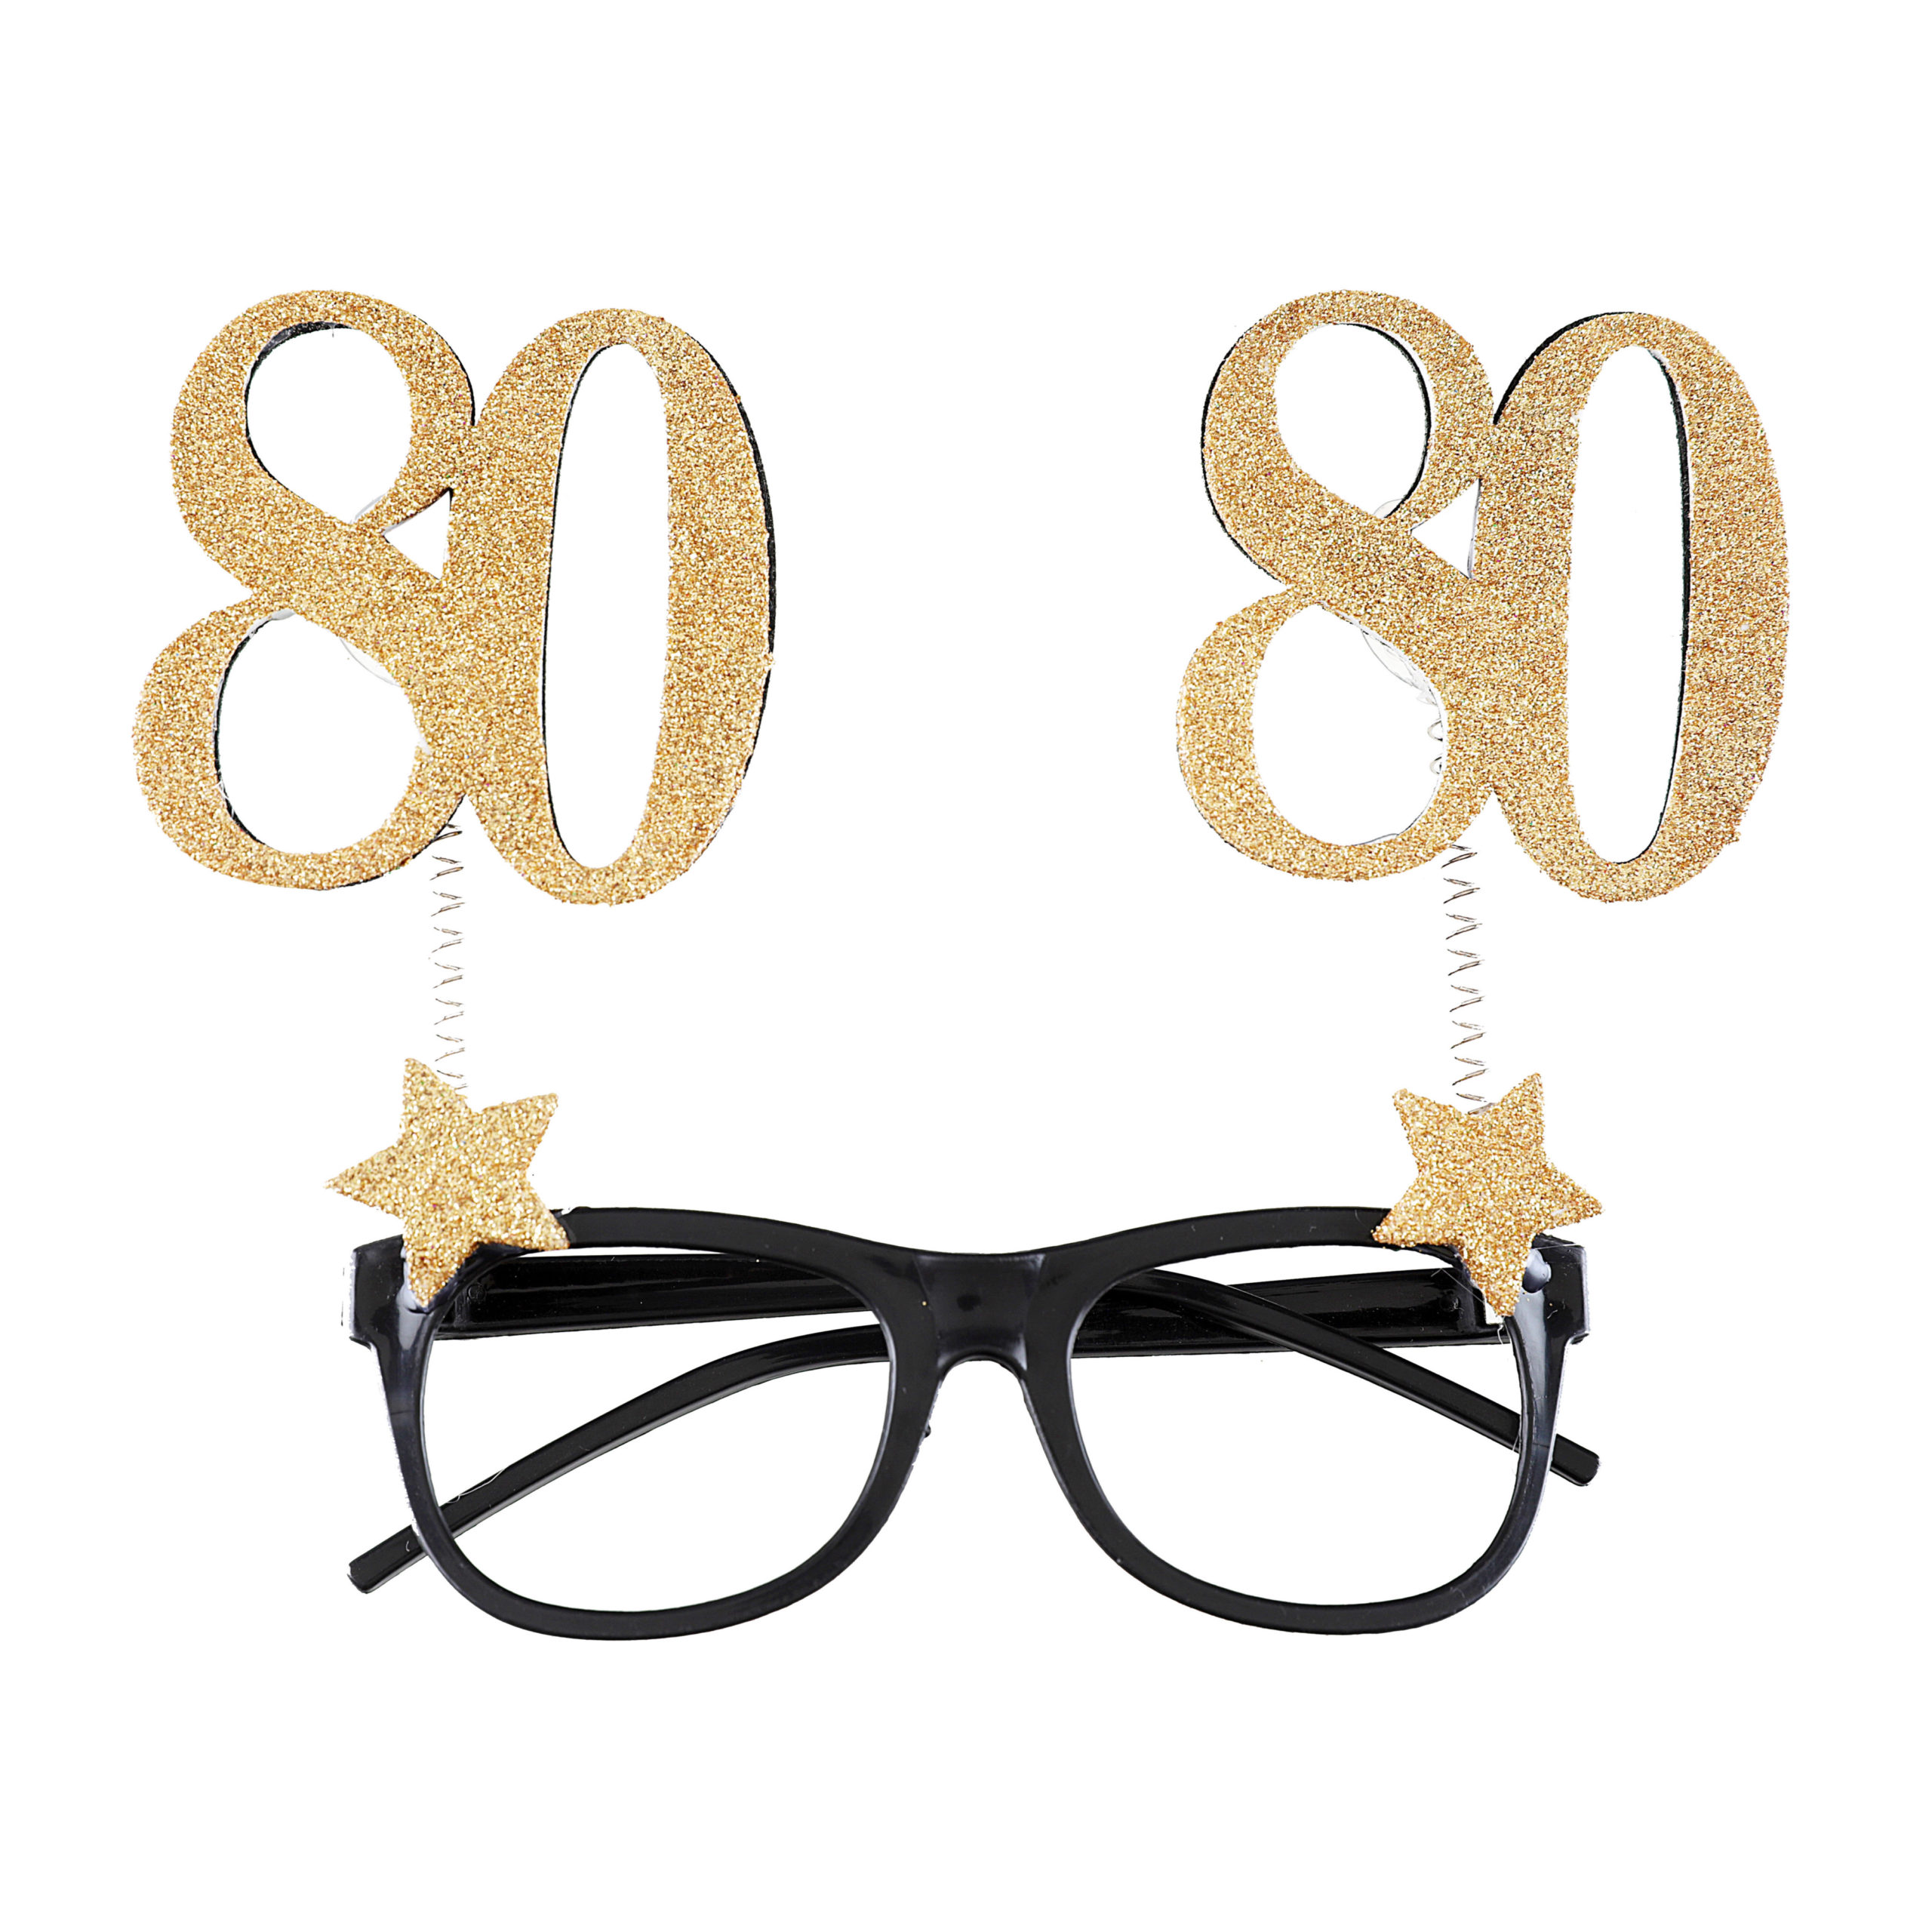 Occhiali Party Buon Compleanno 30 Anni occhiali divertenti accessorio per  party e feste di compleanno 